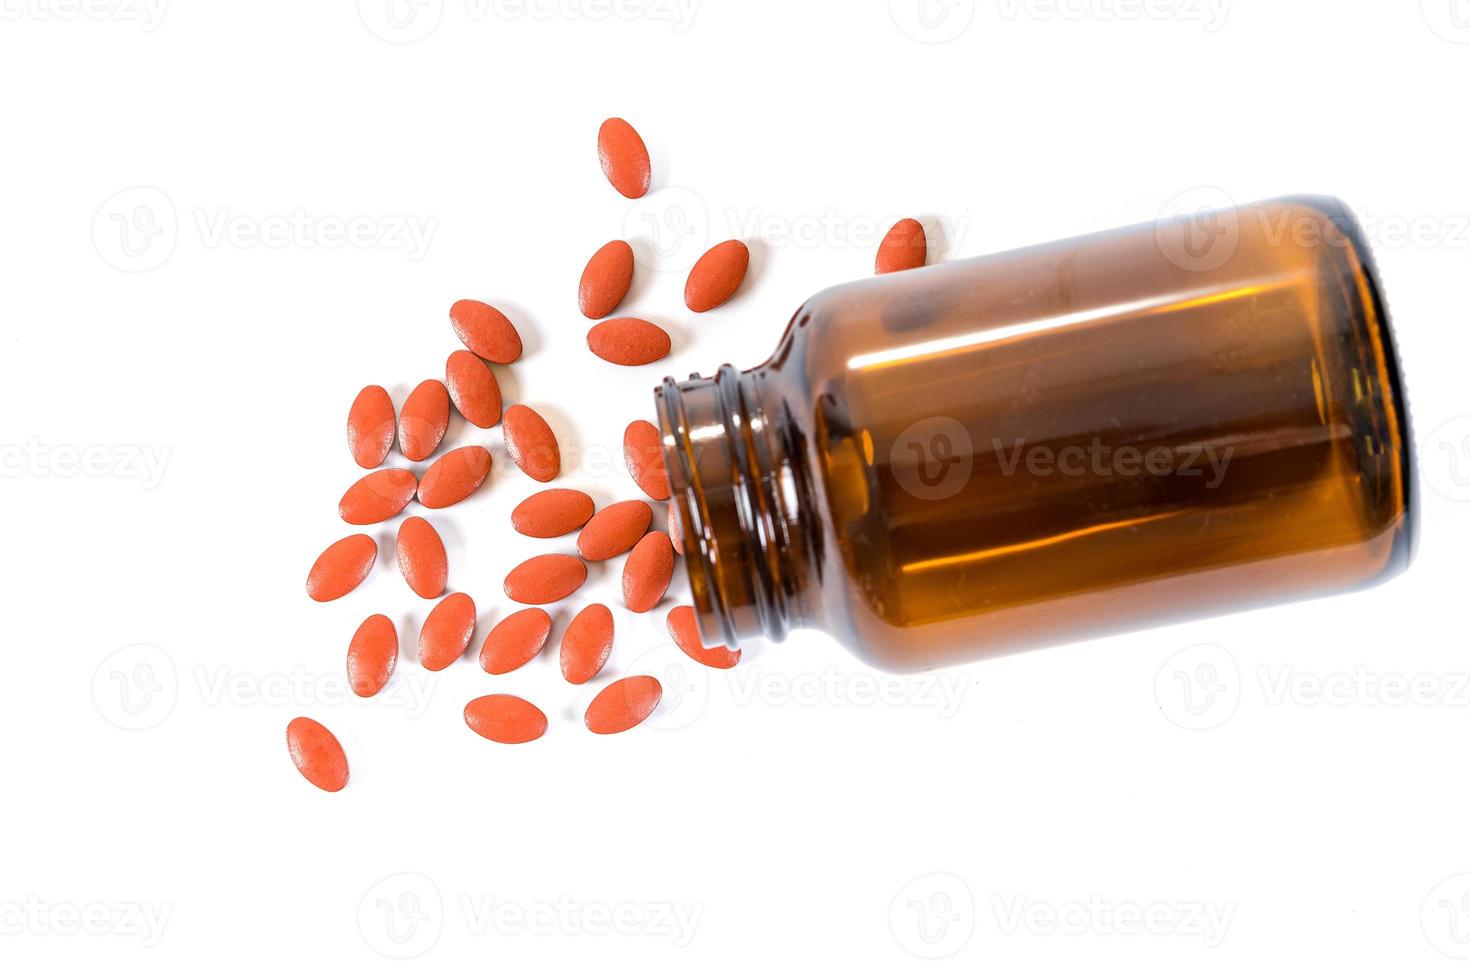 en hel del piller och medicin som häller från flaskan på vit bakgrund foto